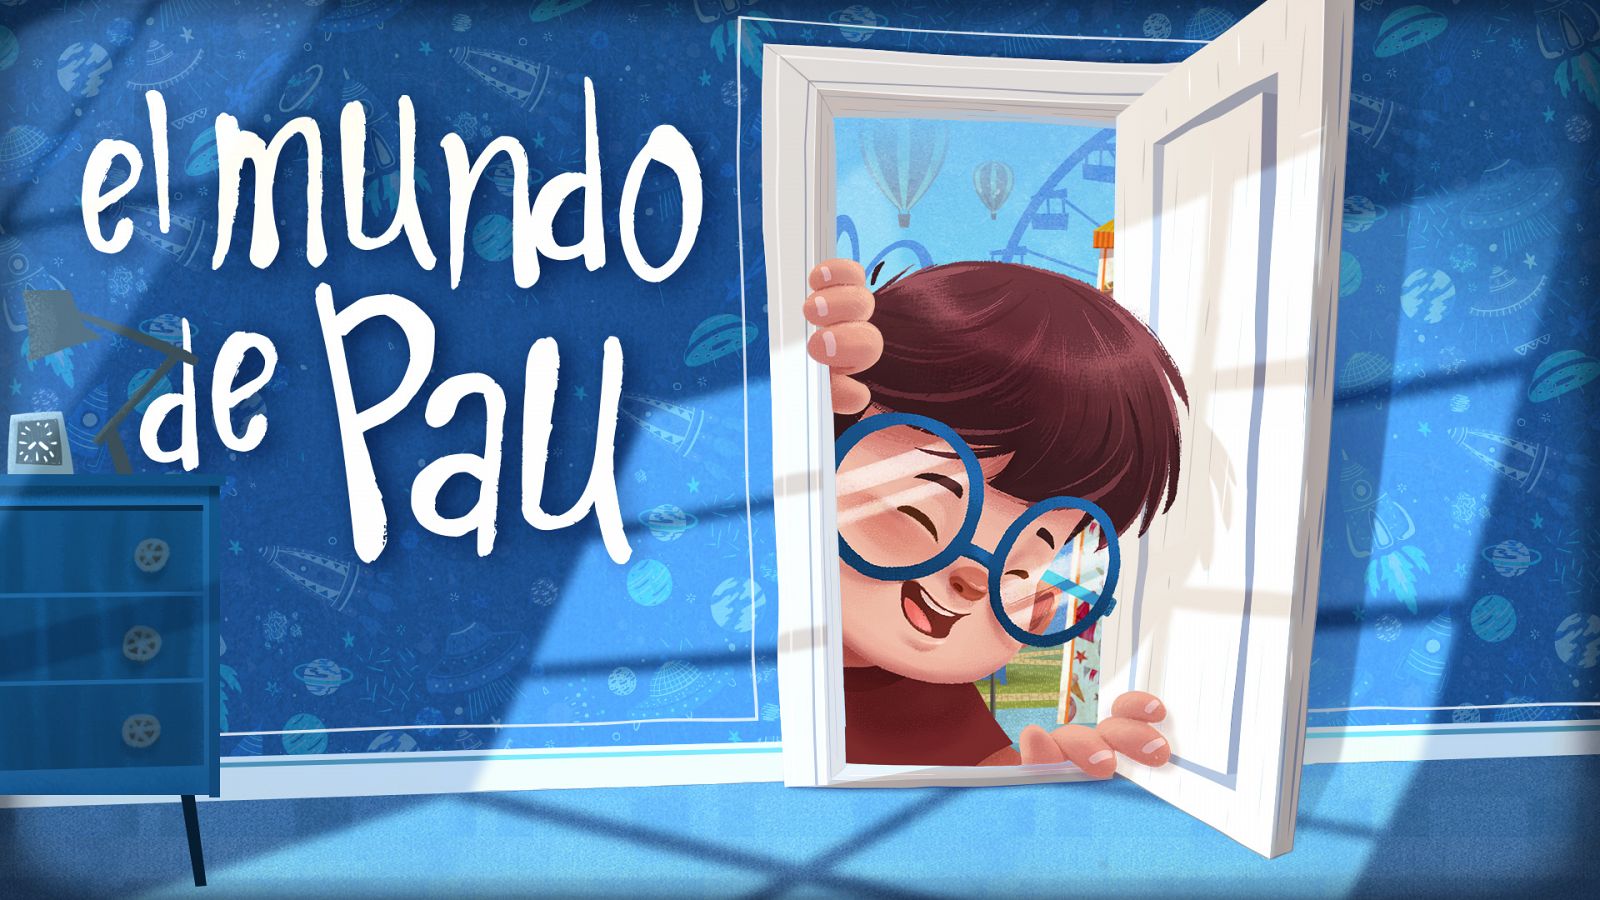 Clan pre-estrena 'El mundo de Pau', protagonizada por un niño con síndrome de Down  